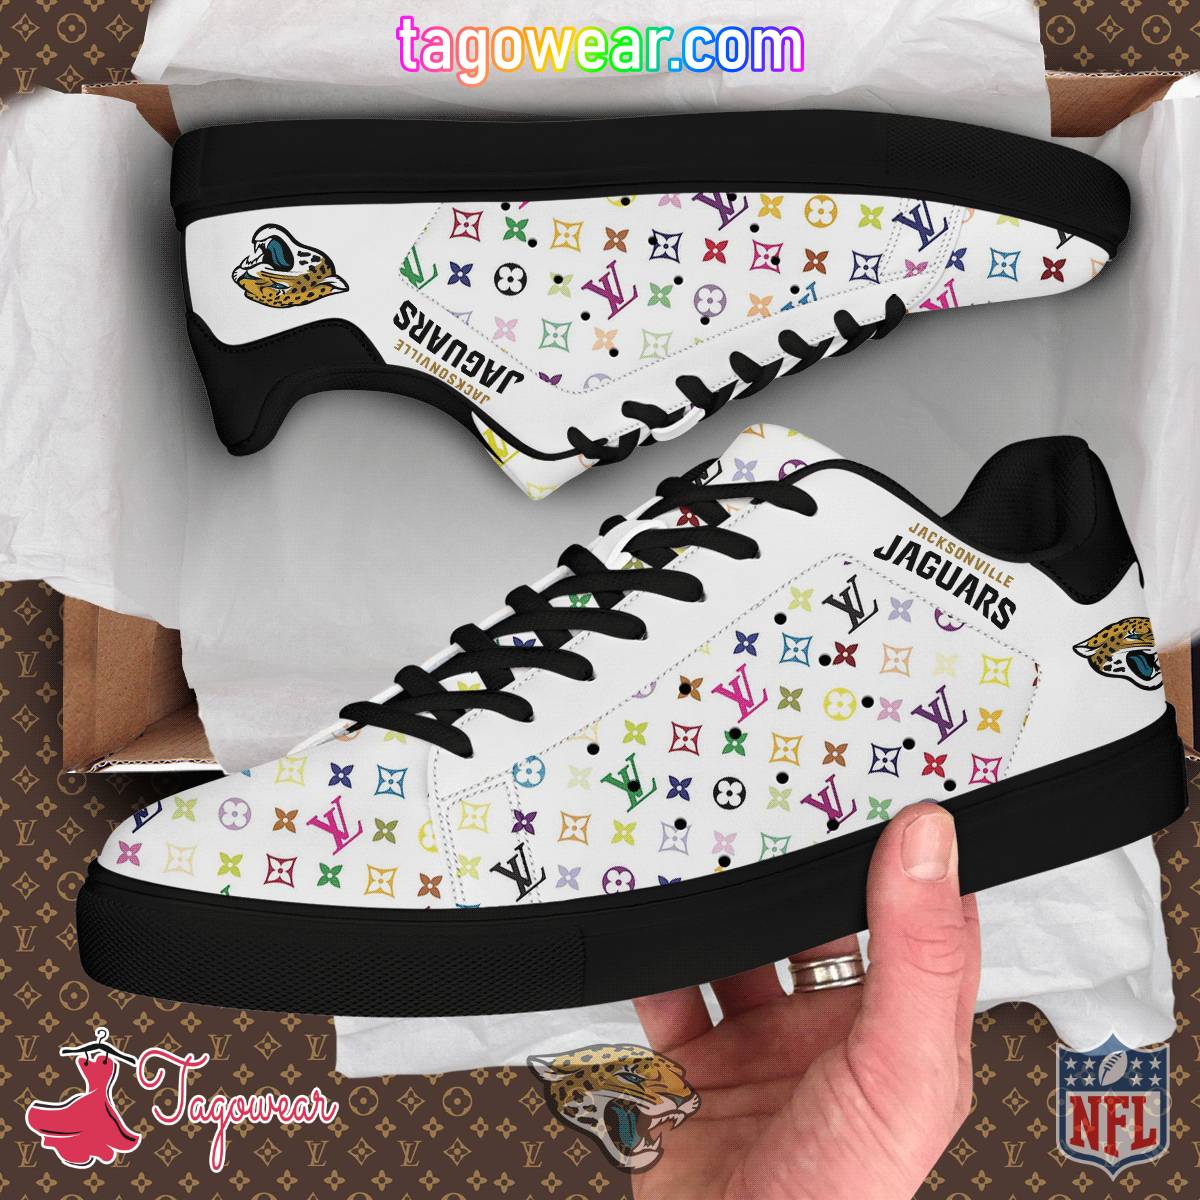 Jacksonville Jaguars NFL Louis Vuitton Stan Smith Shoes a